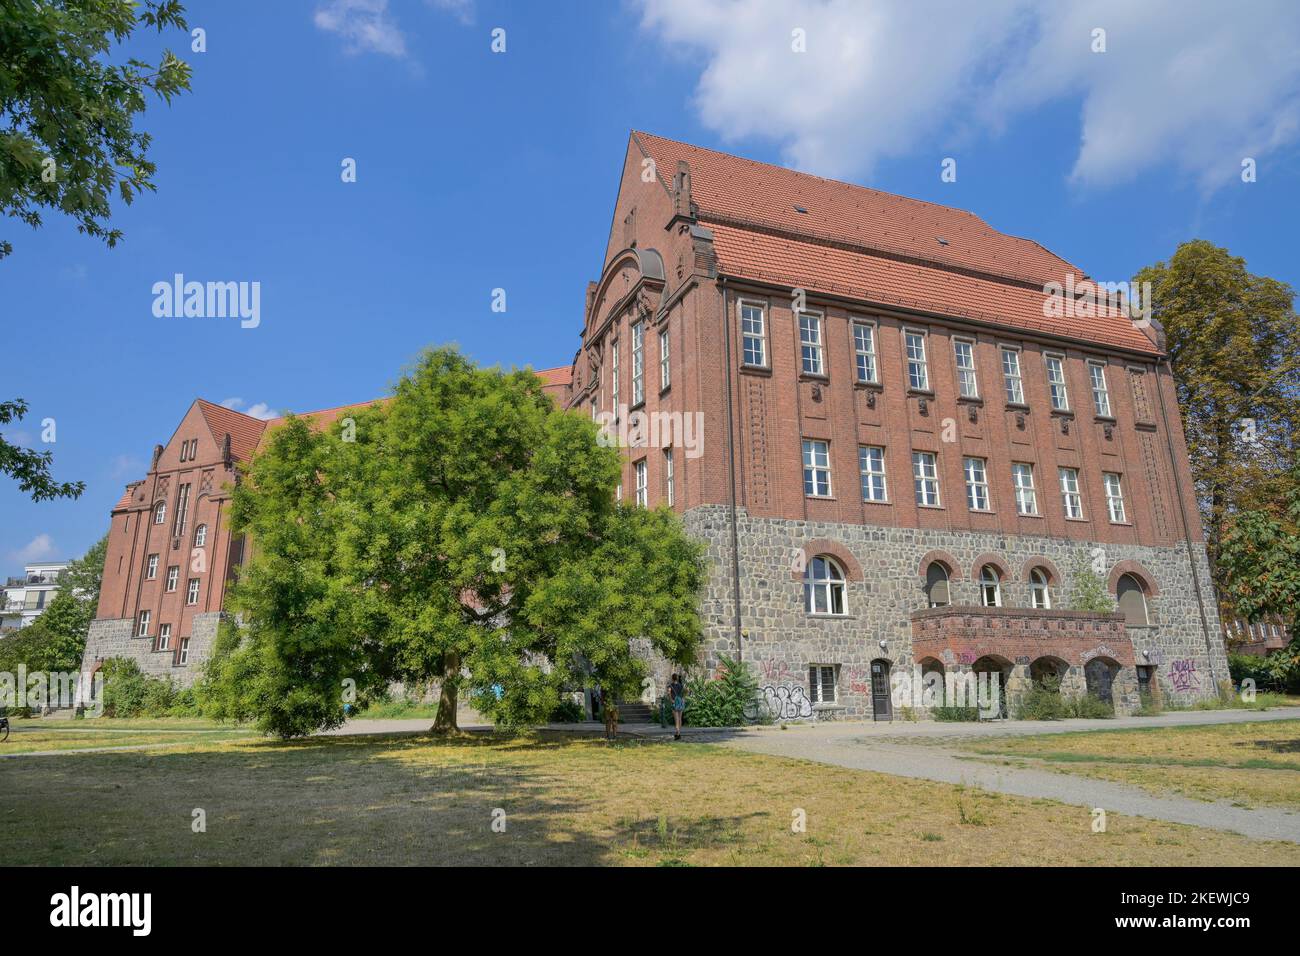 Primo-Levi-Gymnasium, Weißensee, Pankow, Berlin, Deutschland  Stockfotografie - Alamy